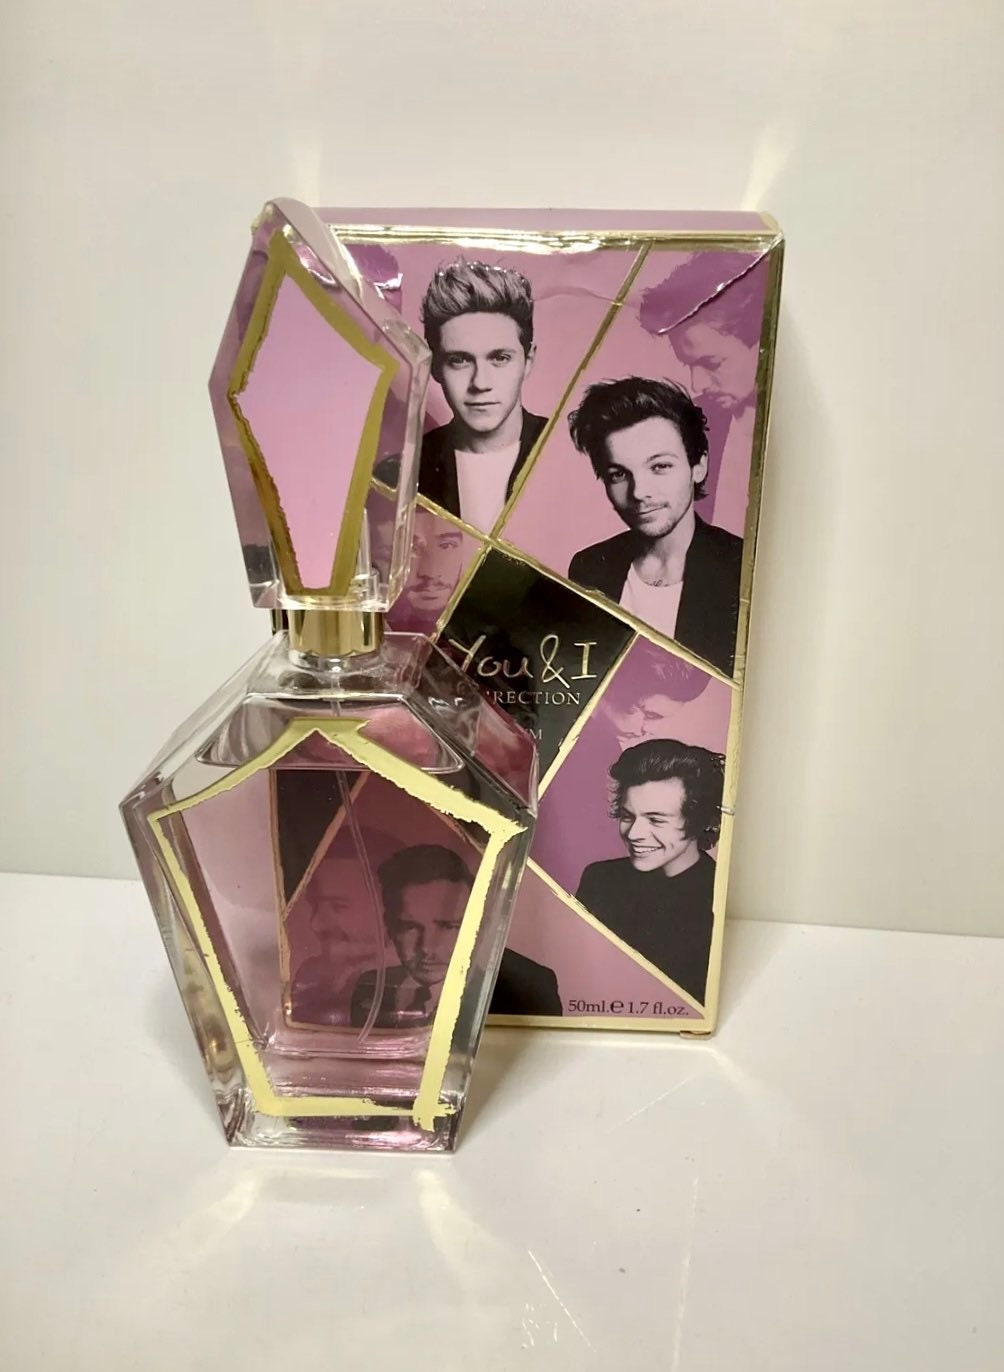 & I One Direction Eau Parfum Spray 1.7 Fl 90% Full - Etsy